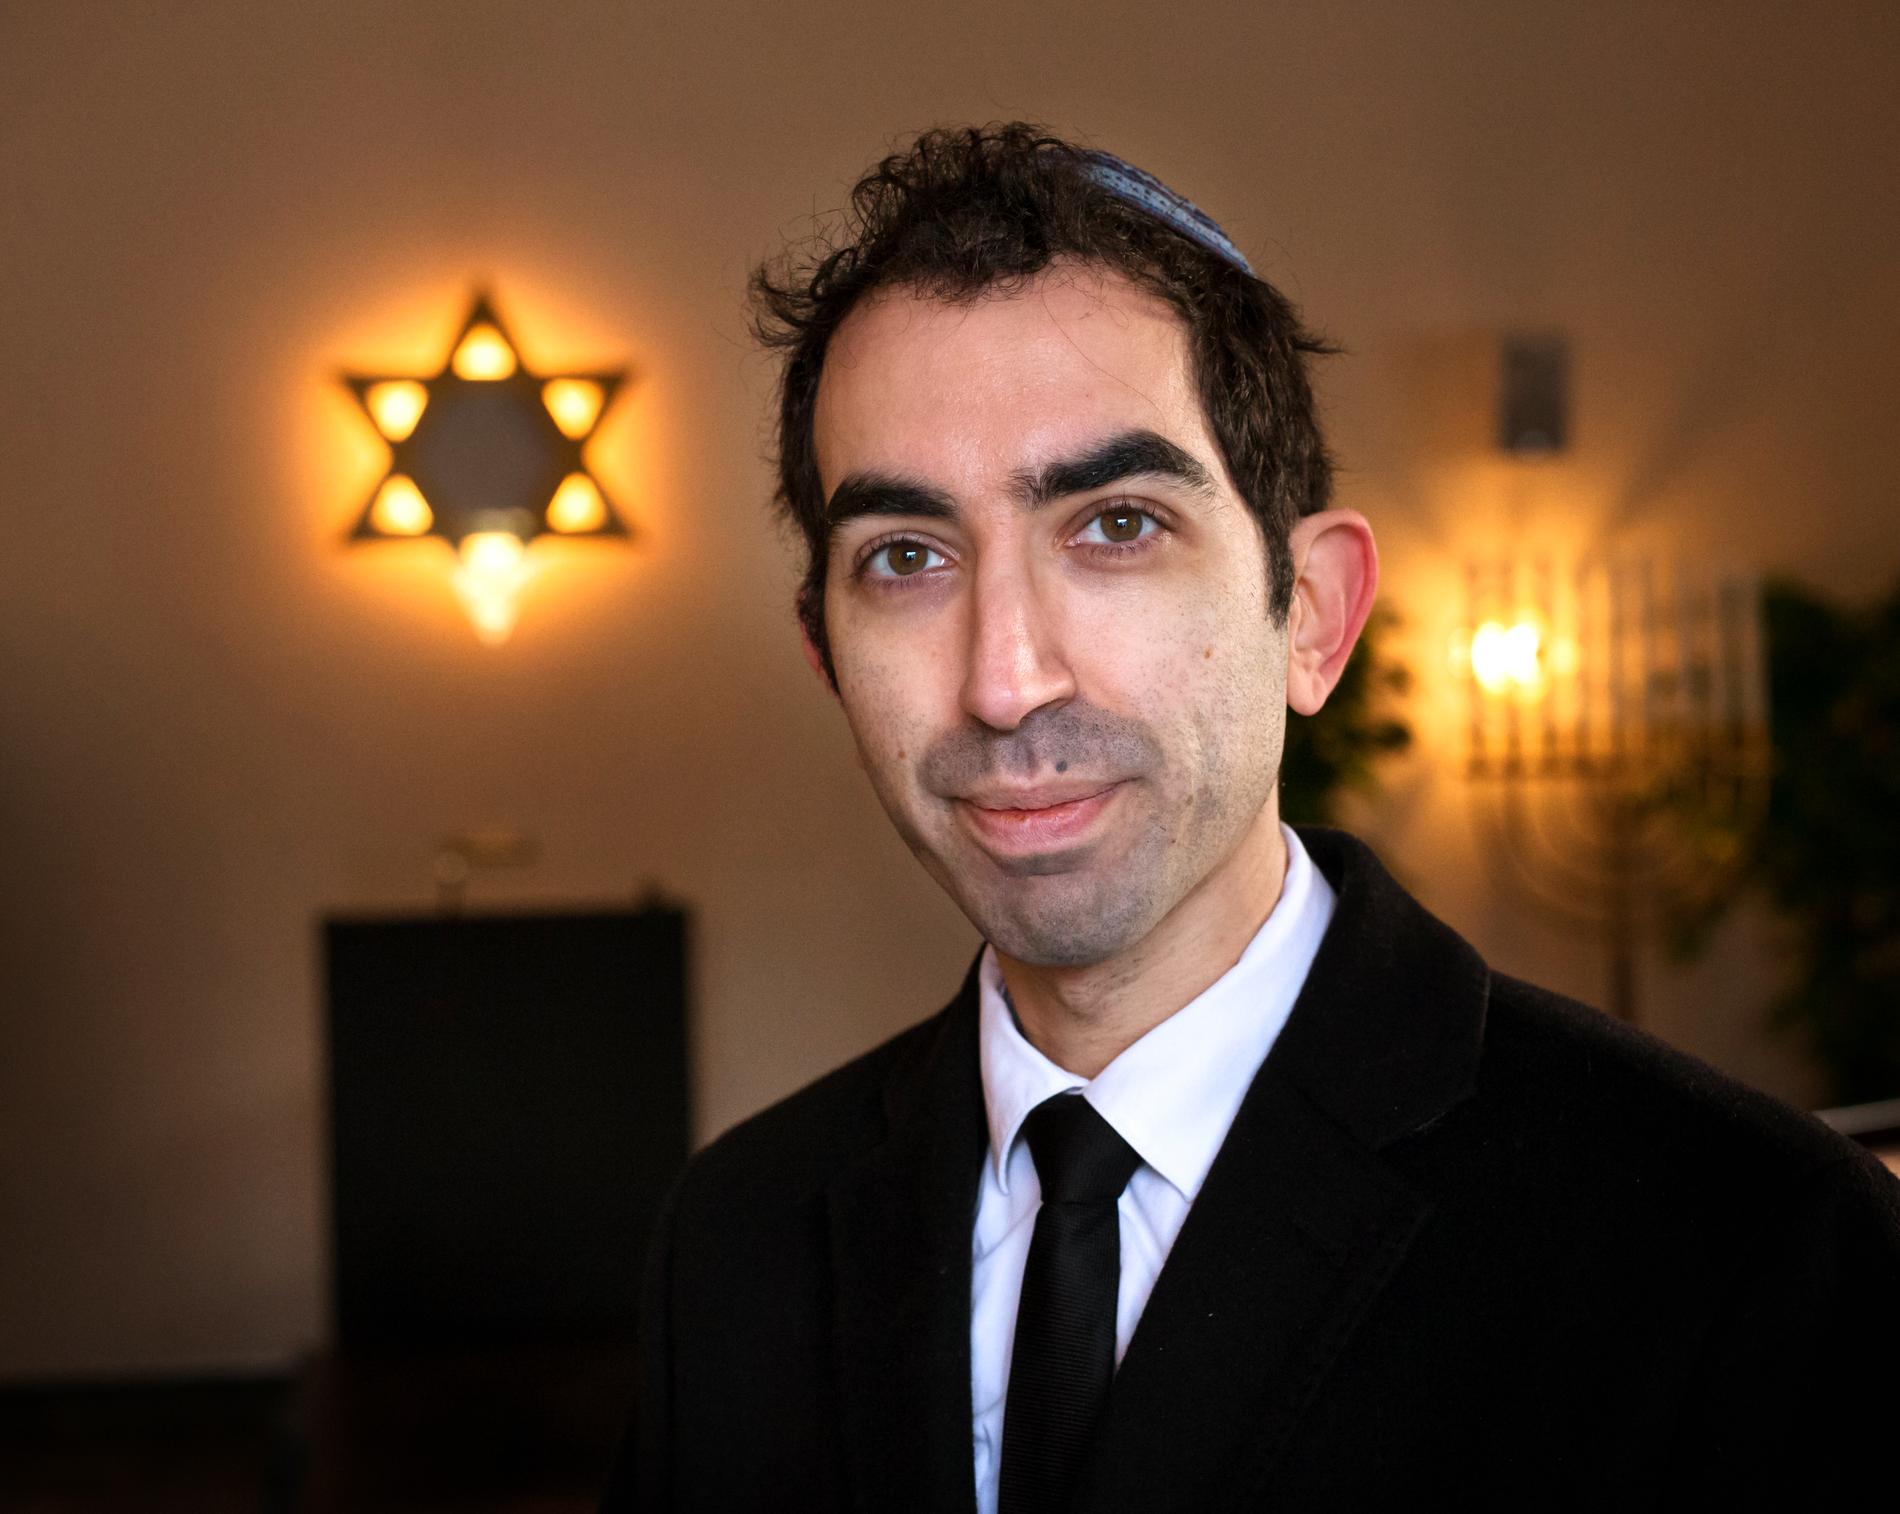 Hillel Lavery-Yisrael är rabbin i Göteborgs judiska församling. Han har tagit emot så många grova hot och trakasserier att han överväger att flytta från Sverige.
– Som jude i Göteborg är man väldigt utsatt, säger han.